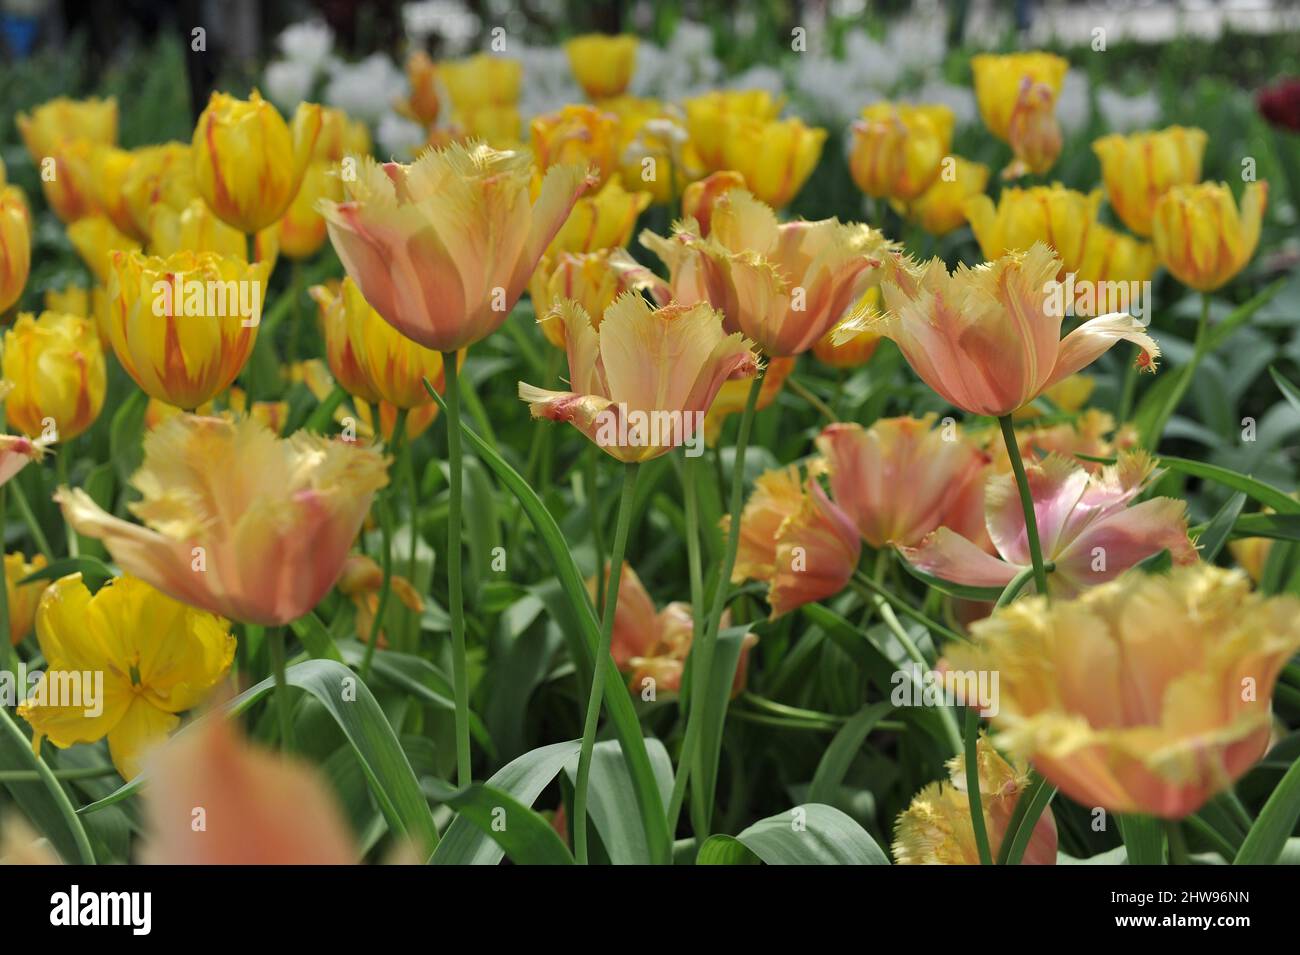 Gelbe und rosa gefranste Tulpen (Tulipa) Lambada blühen im April in einem Garten Stockfoto